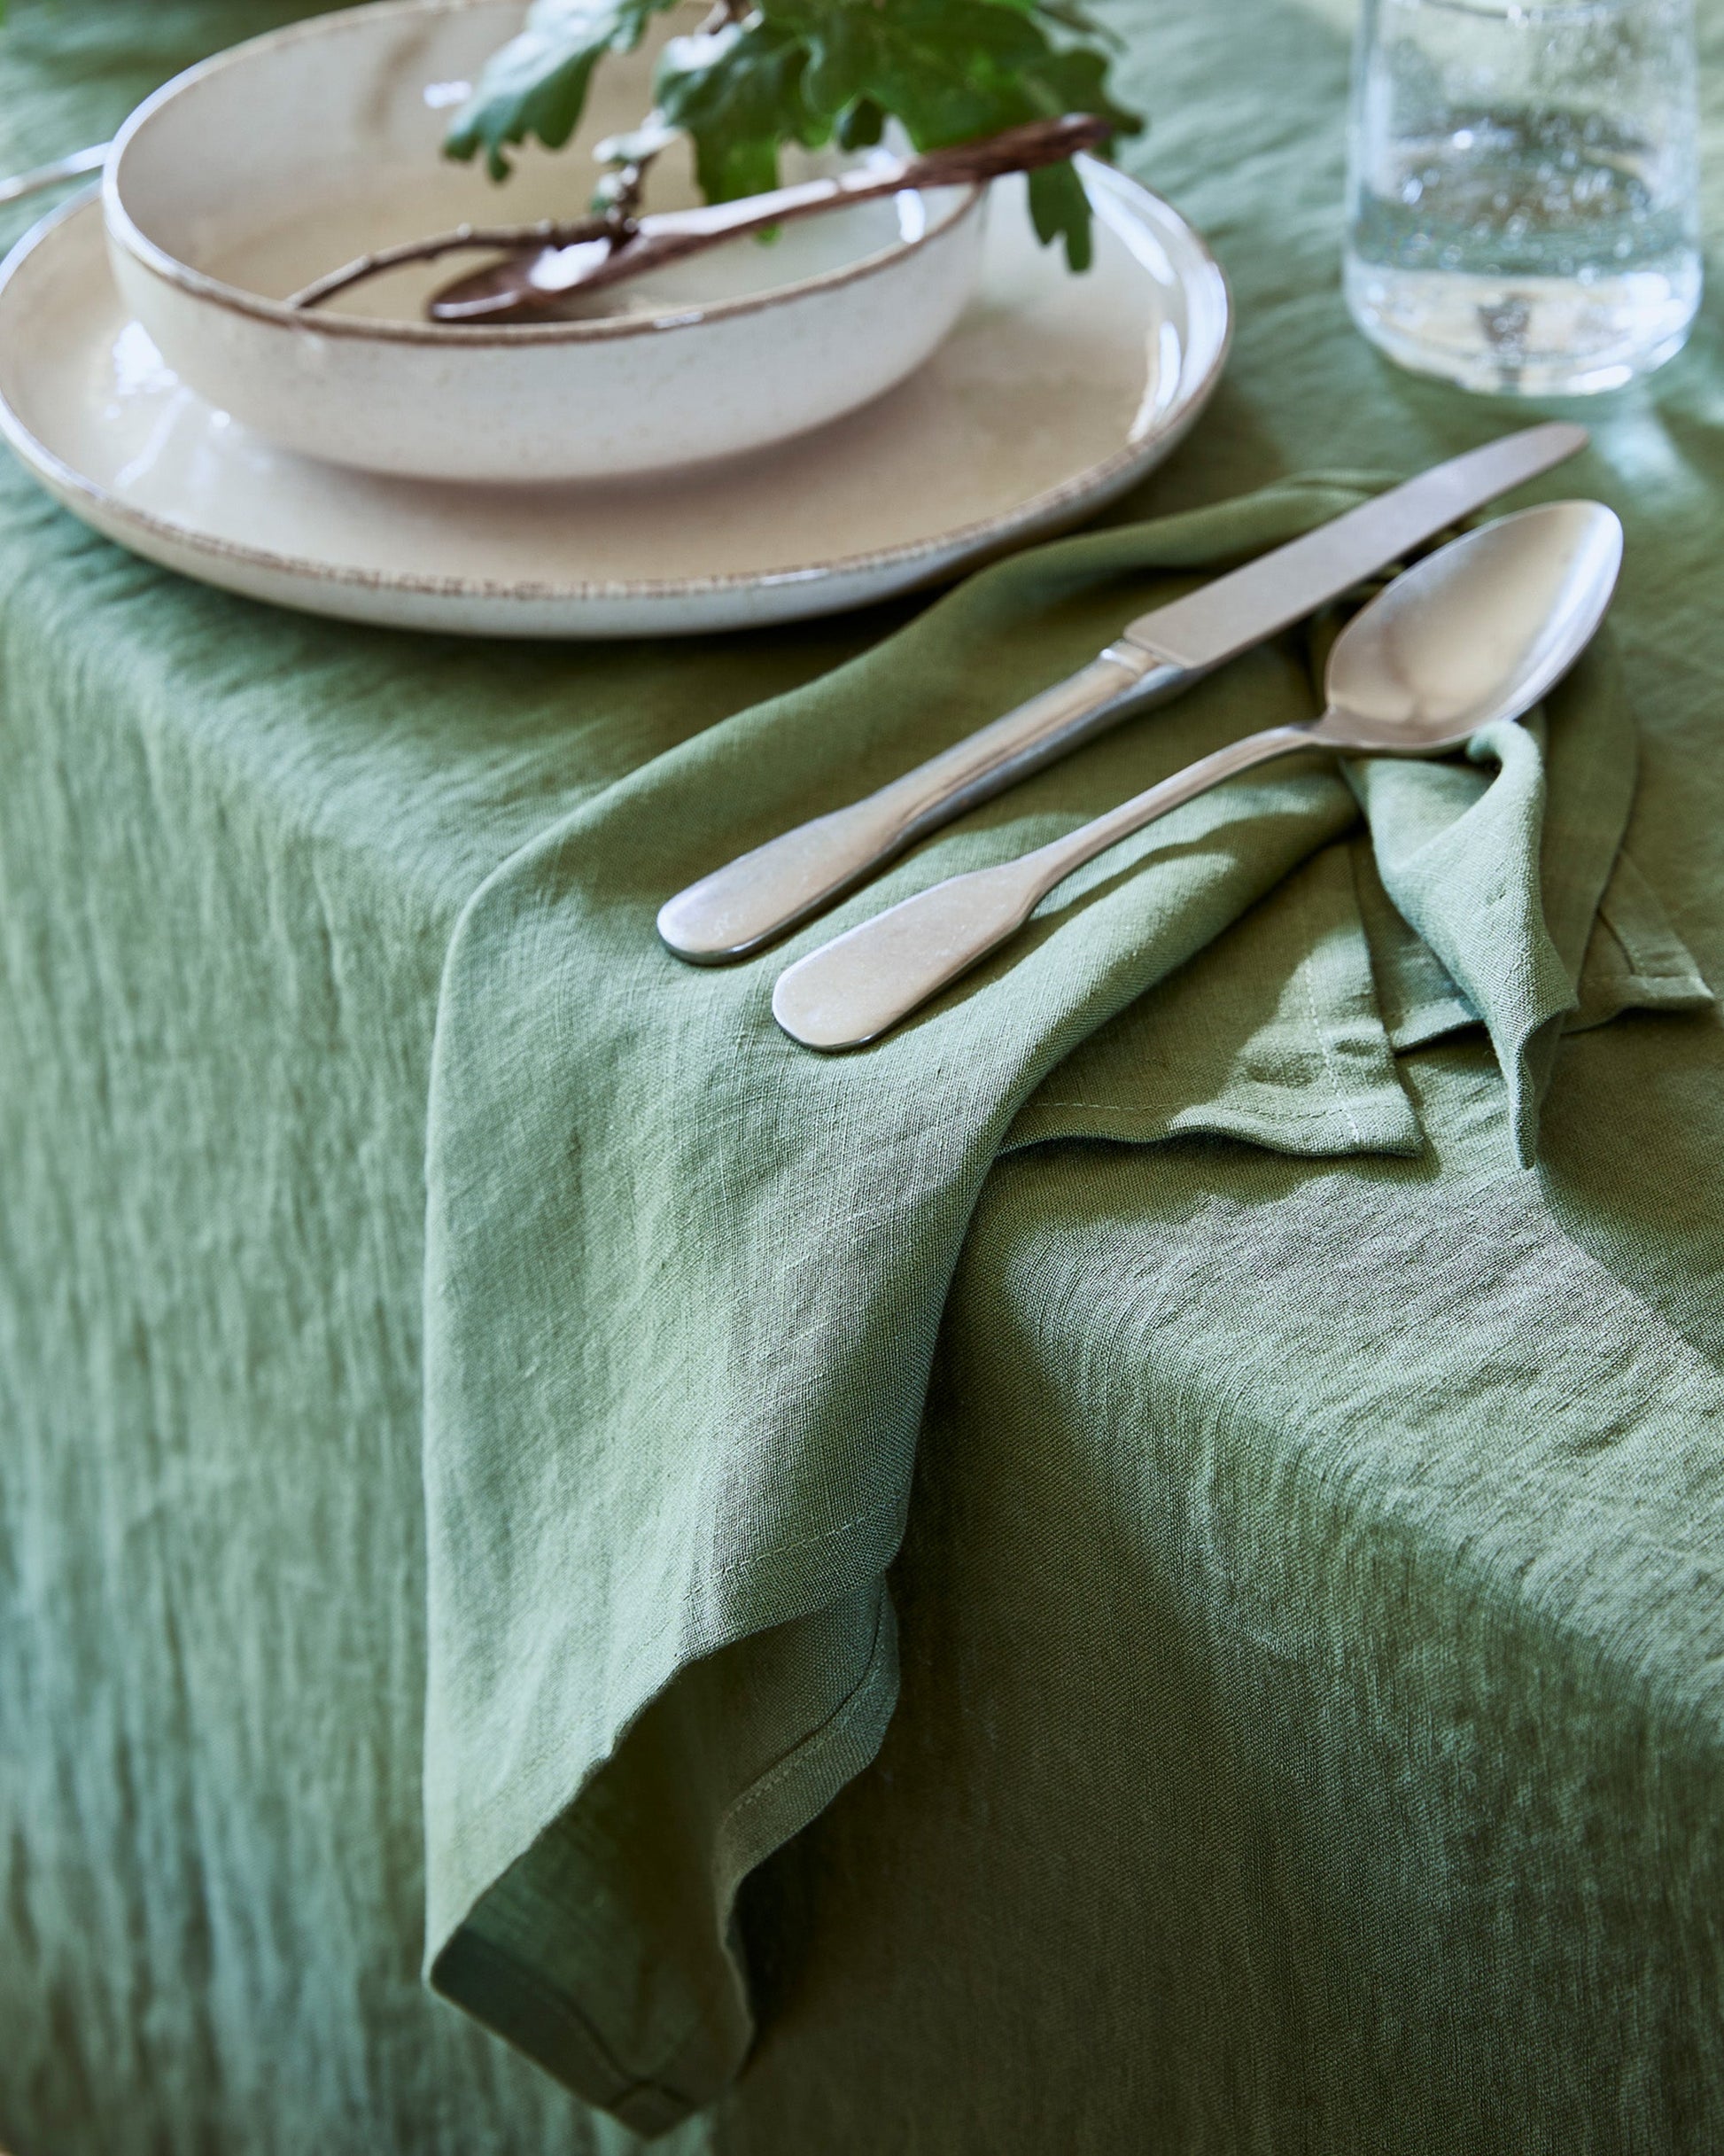 https://magiclinen.com/cdn/shop/products/forest-green-linen-tablecloth-4.jpg?v=1696602518&width=1946